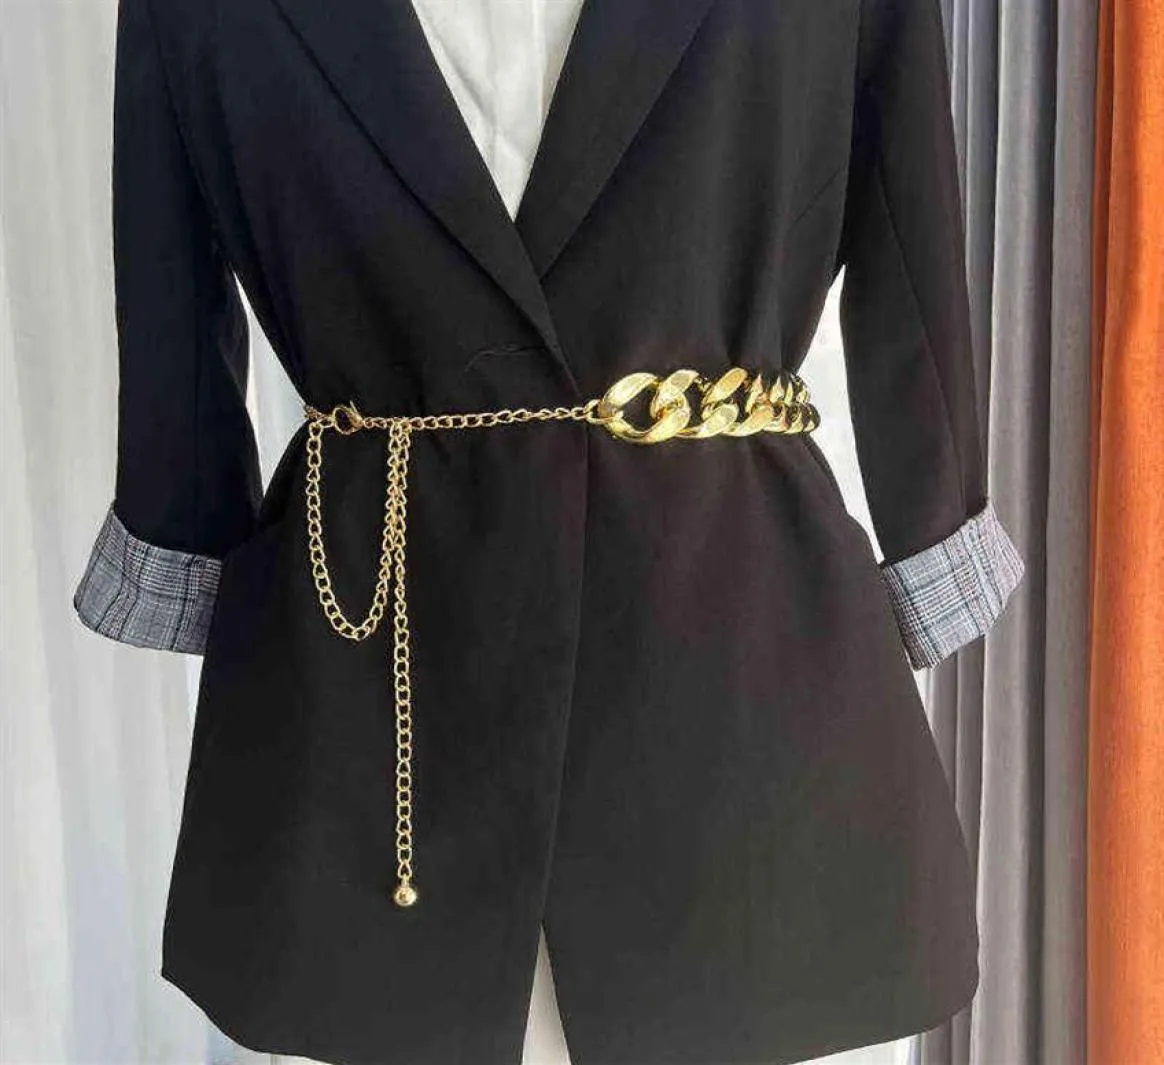 Corrente de ouro cinto fino para mulheres moda metal correntes de cintura senhoras vestido casaco saia cintura decorativa punk jóias acessórios g26423241